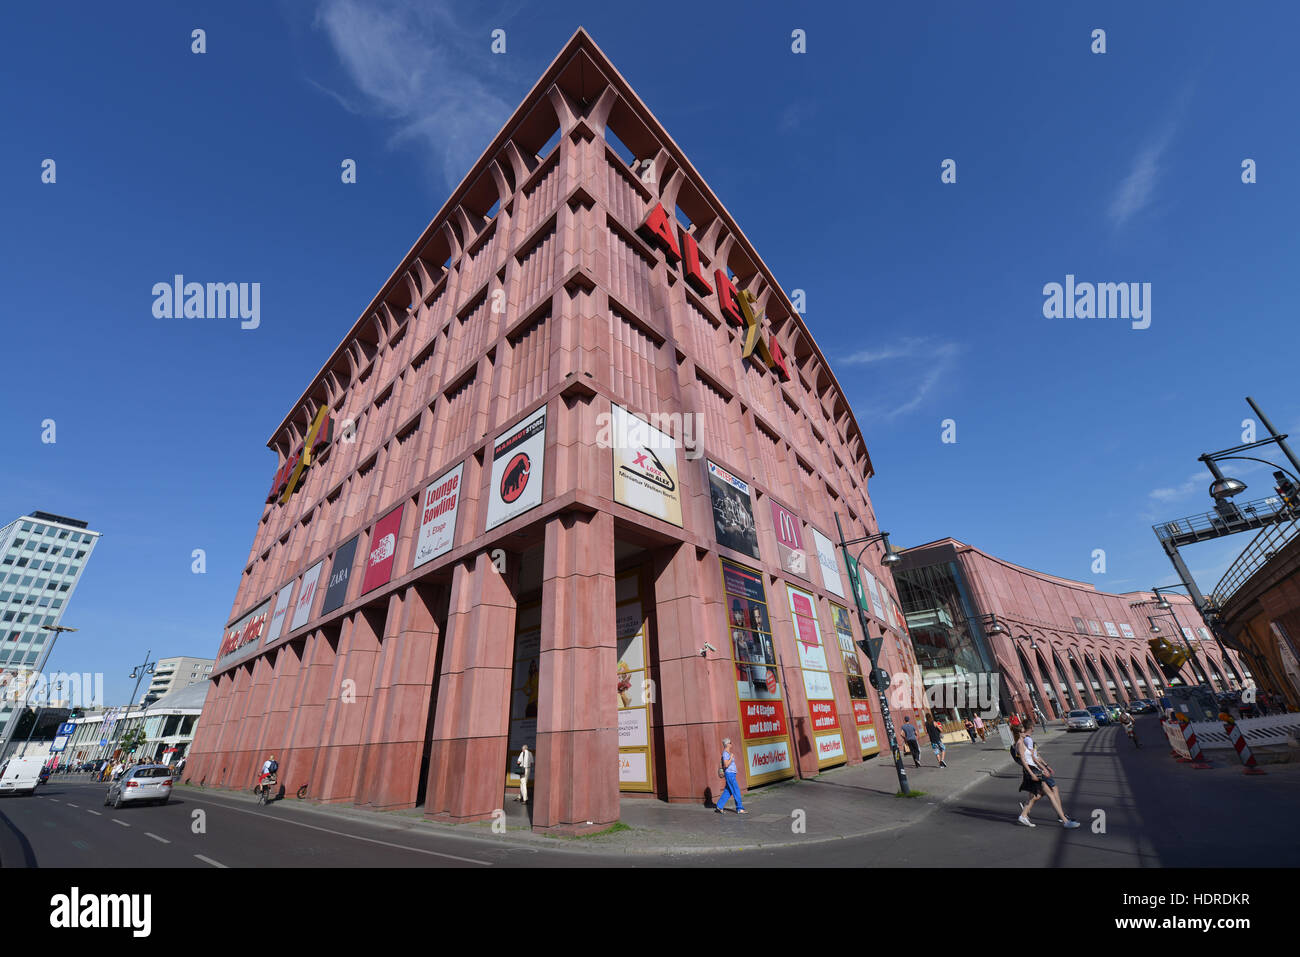 Einkaufszentrum, Alexa, Grunerstrasse, Mitte, Berlin, Deutschland Stock  Photo - Alamy